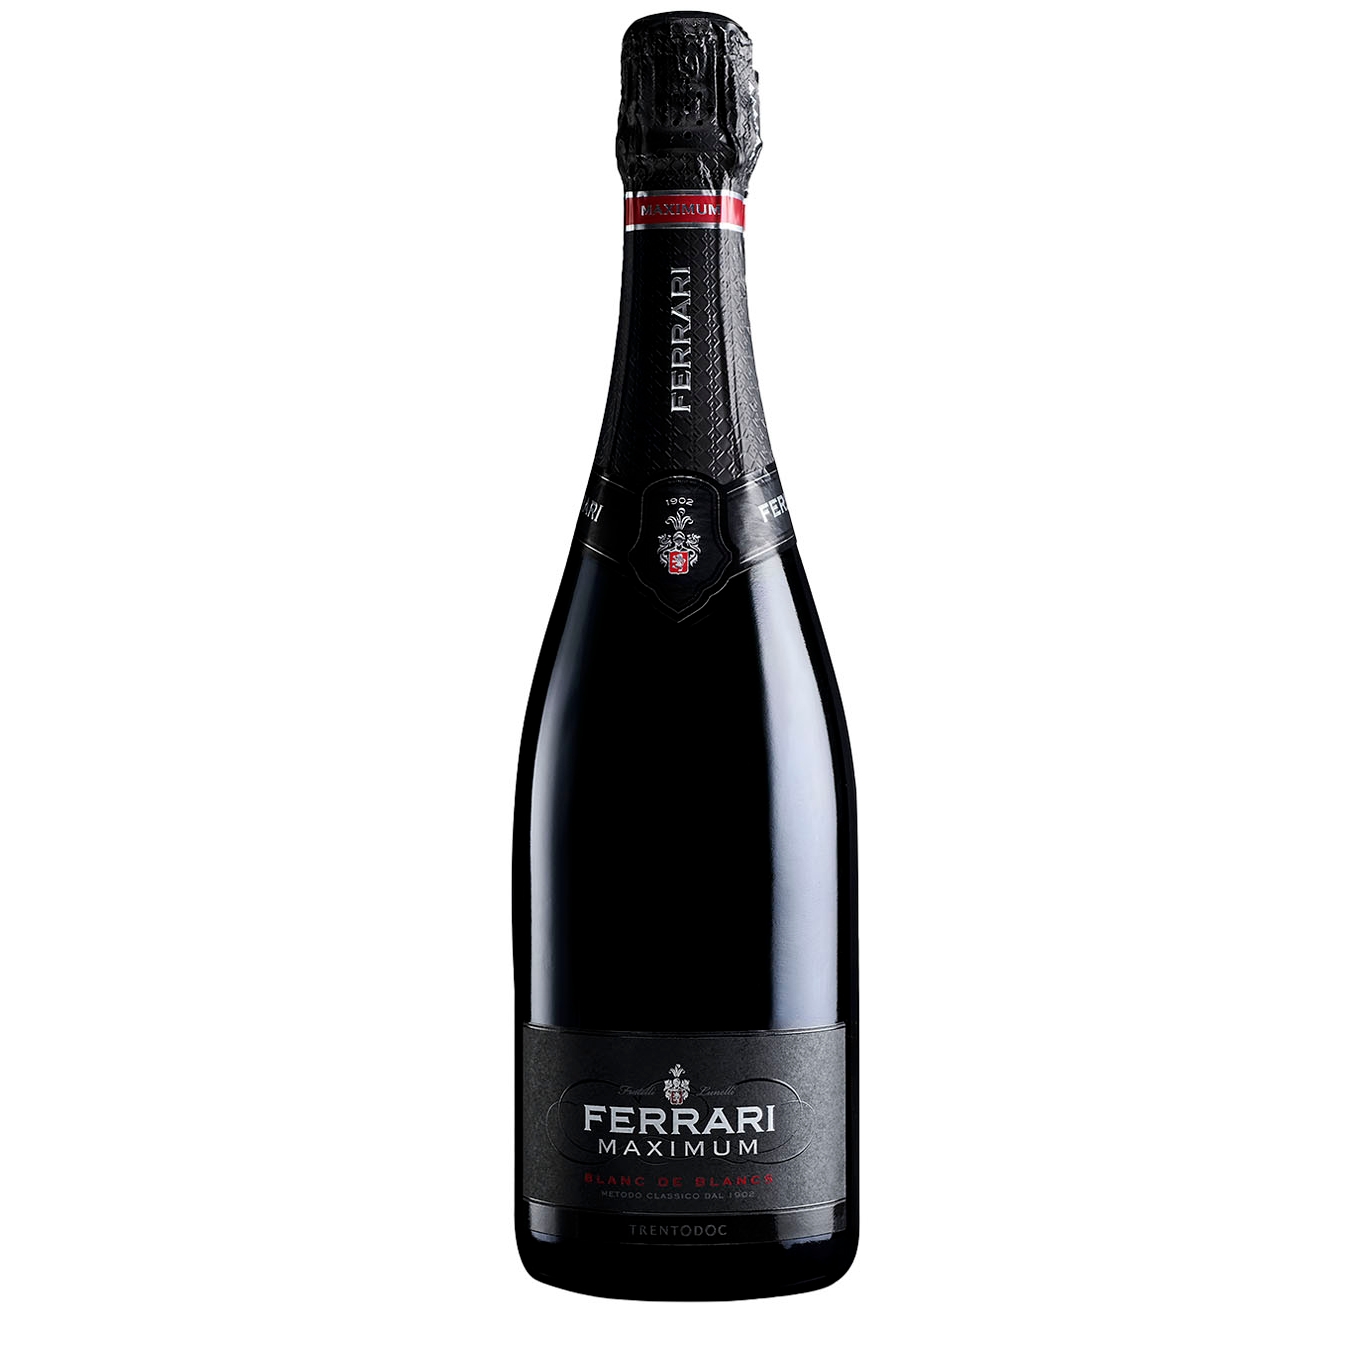 Ferrari Maximum Blanc De Blanc Trentodoc Sparkling Wine NV Sparkling Wine